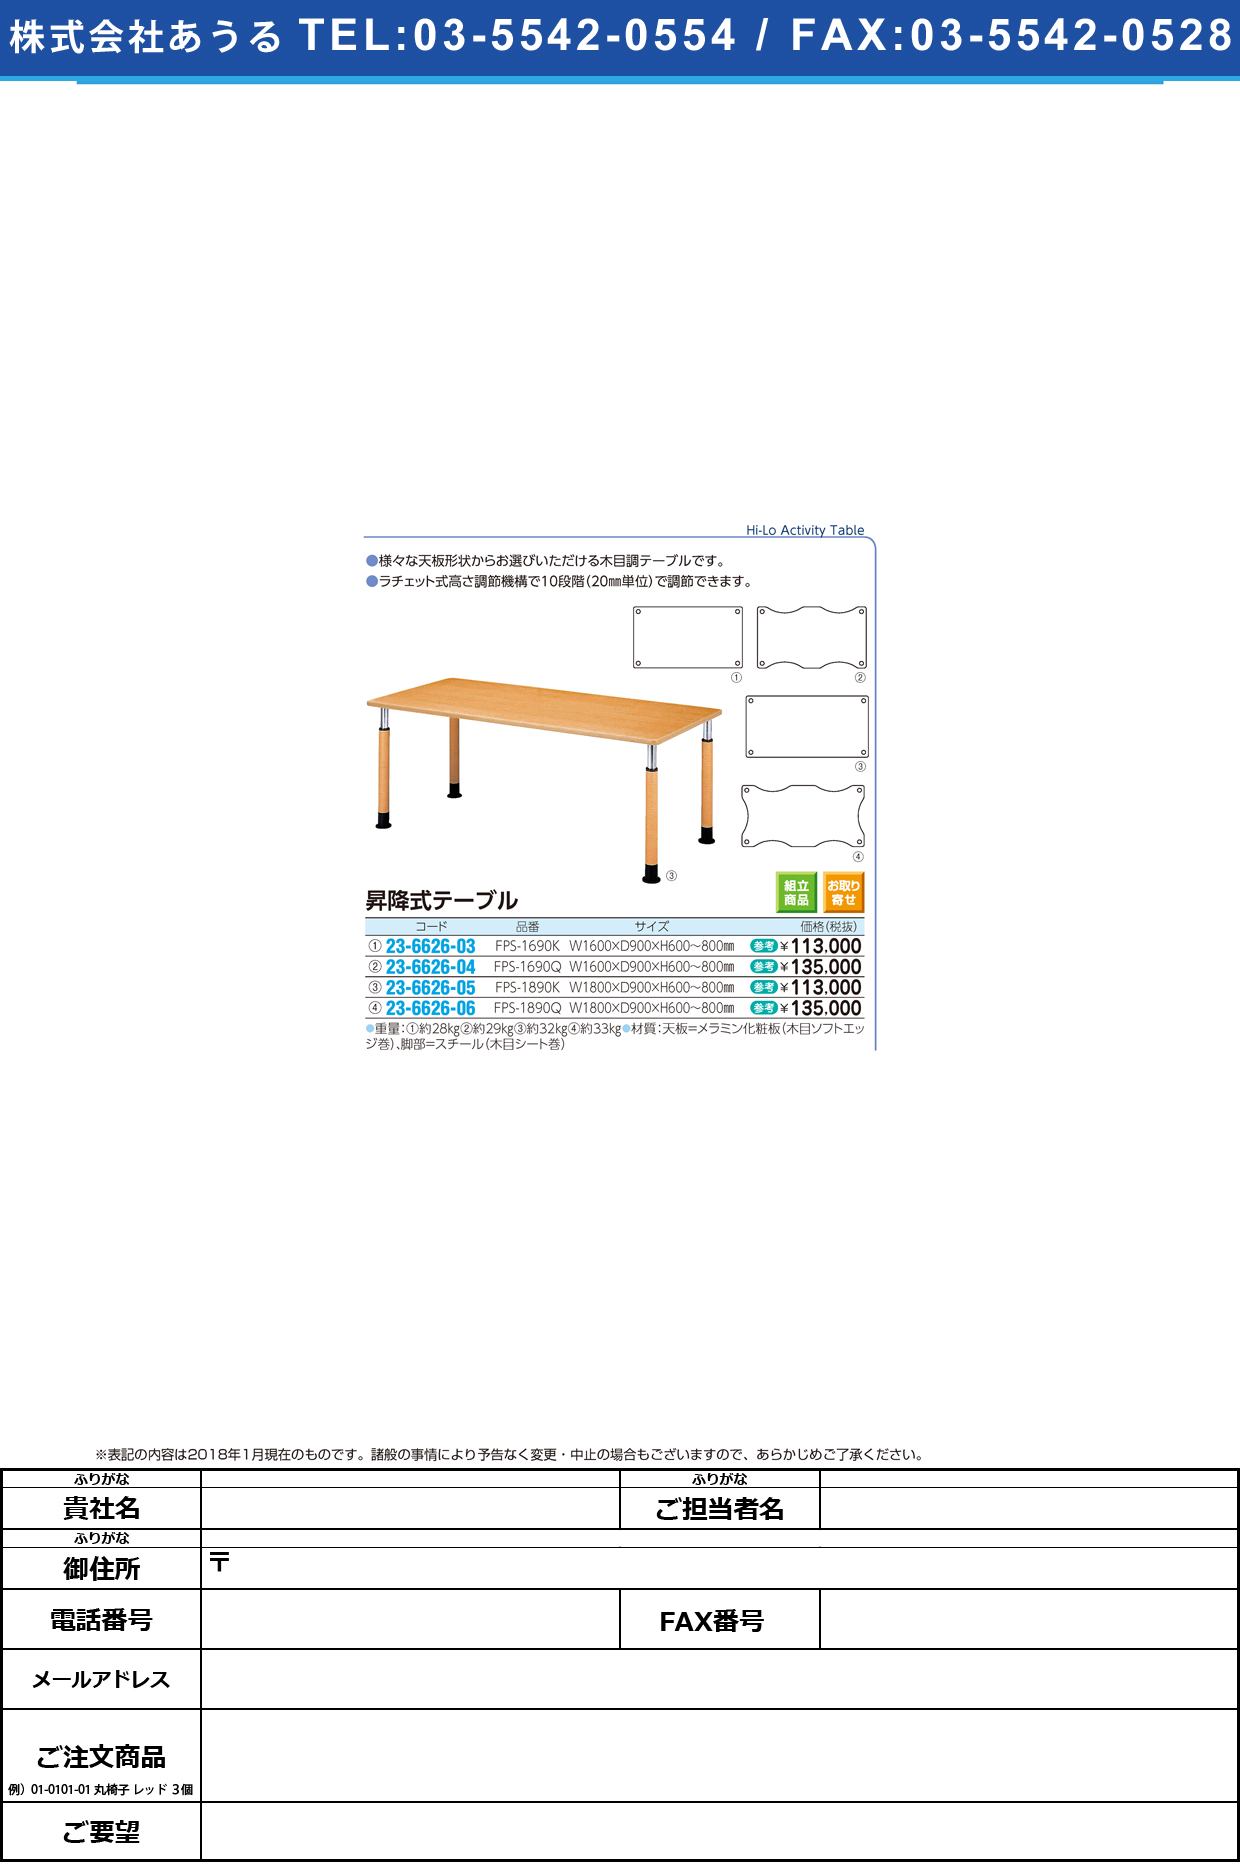 (23-6626-05)昇降式テーブル FPS-1890K(W180XD90CM ｼｮｳｺｳｼｷﾃｰﾌﾞﾙ【1台単位】【2019年カタログ商品】